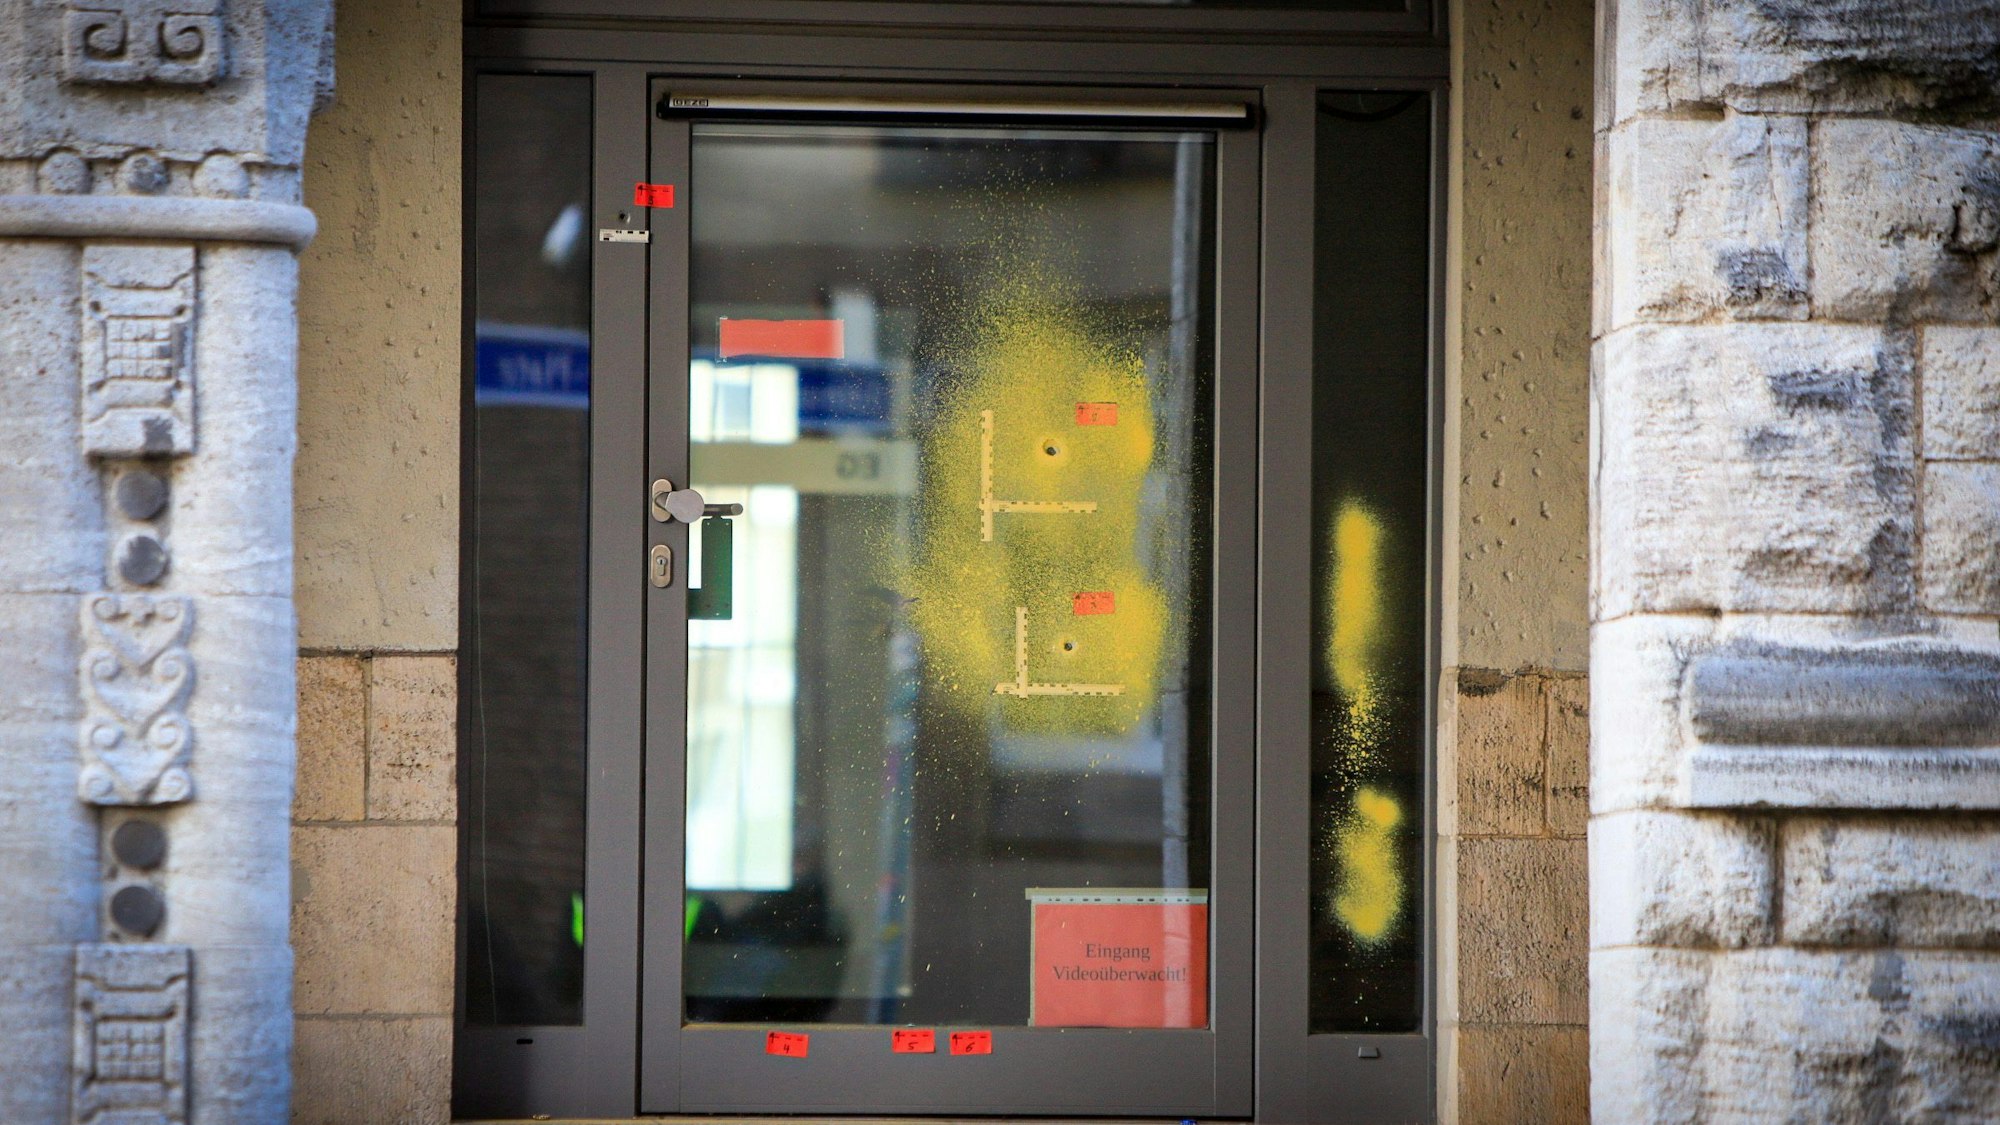 Einschusslöcher sind auf einer verglasten Tür zu sehen. Sie wurden am Rabbinerhaus bei der Alten Synagoge in Essen entdeckt. Die Bundesanwaltschaft wird die Ermittlungen zu Anschlägen auf jüdische Einrichtungen in Nordrhein-Westfalen übernehmen.